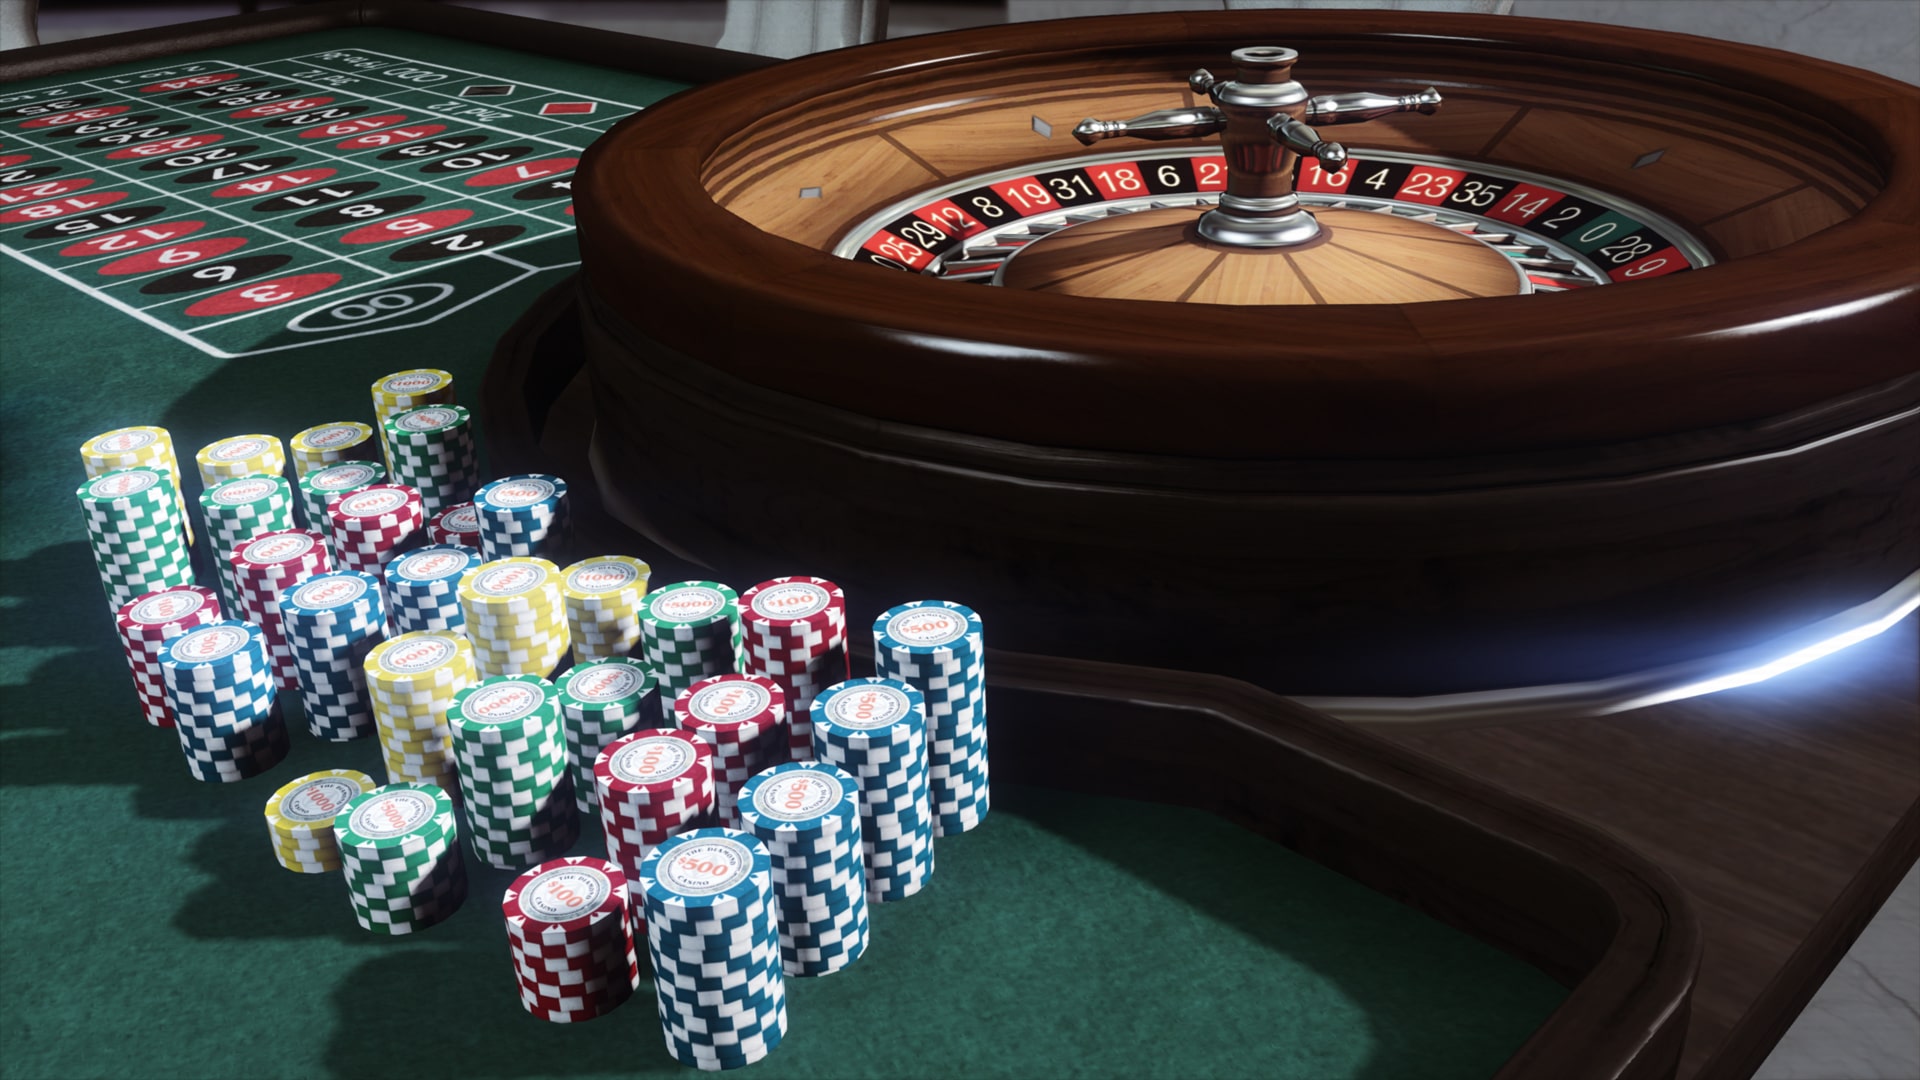 Kazandığın Parayı Yatıran Casino Şirketleri 2020